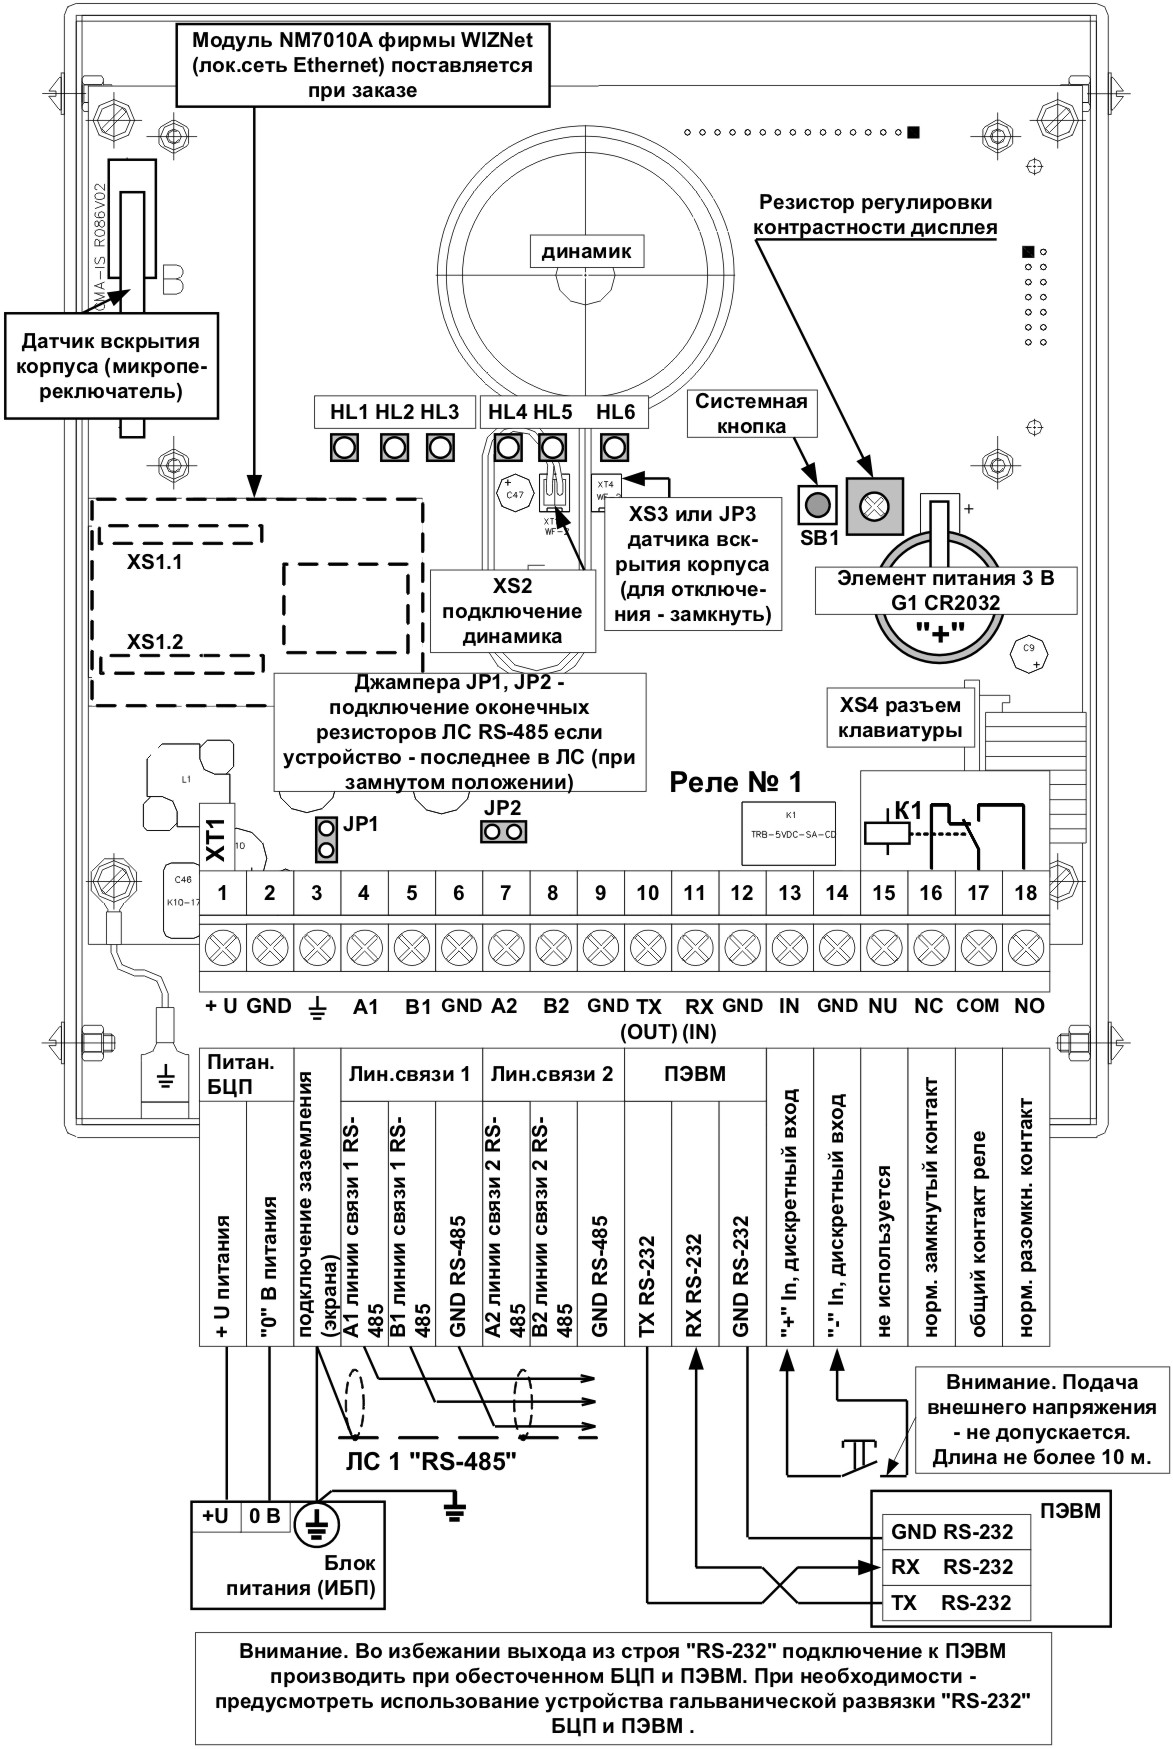 Схема подключения БЦП Р-08 исп.6ВК